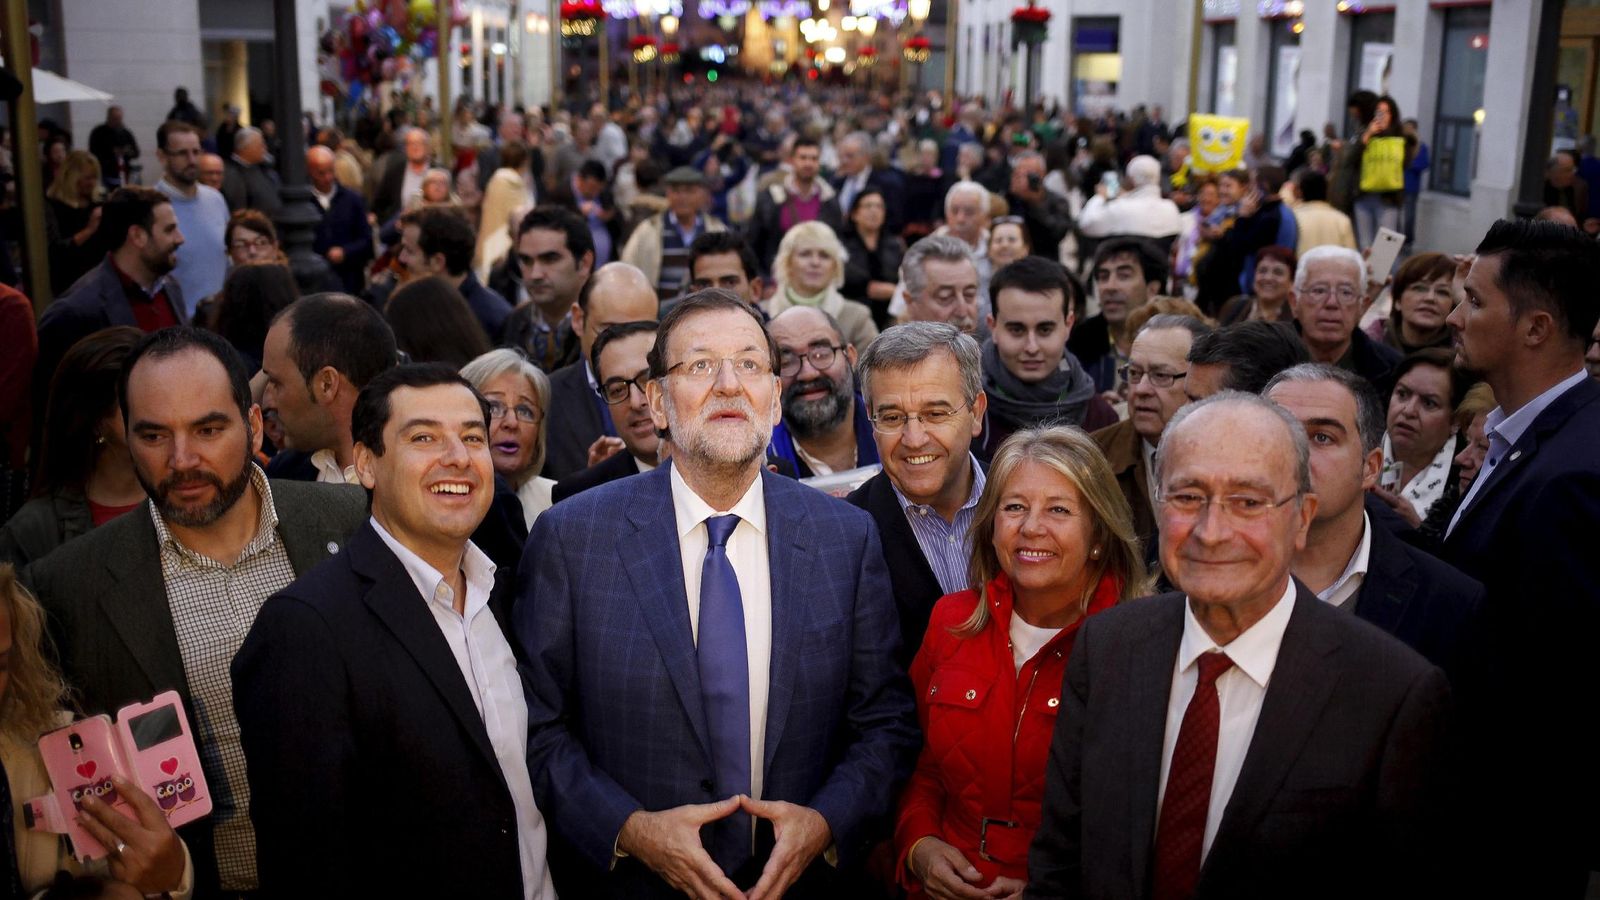 Foto: El presidente del Gobierno, Mariano Rajoy, con el líder del PP andaluz, Moreno Bonilla, rodeados de gente en Málaga. (Reuteres)